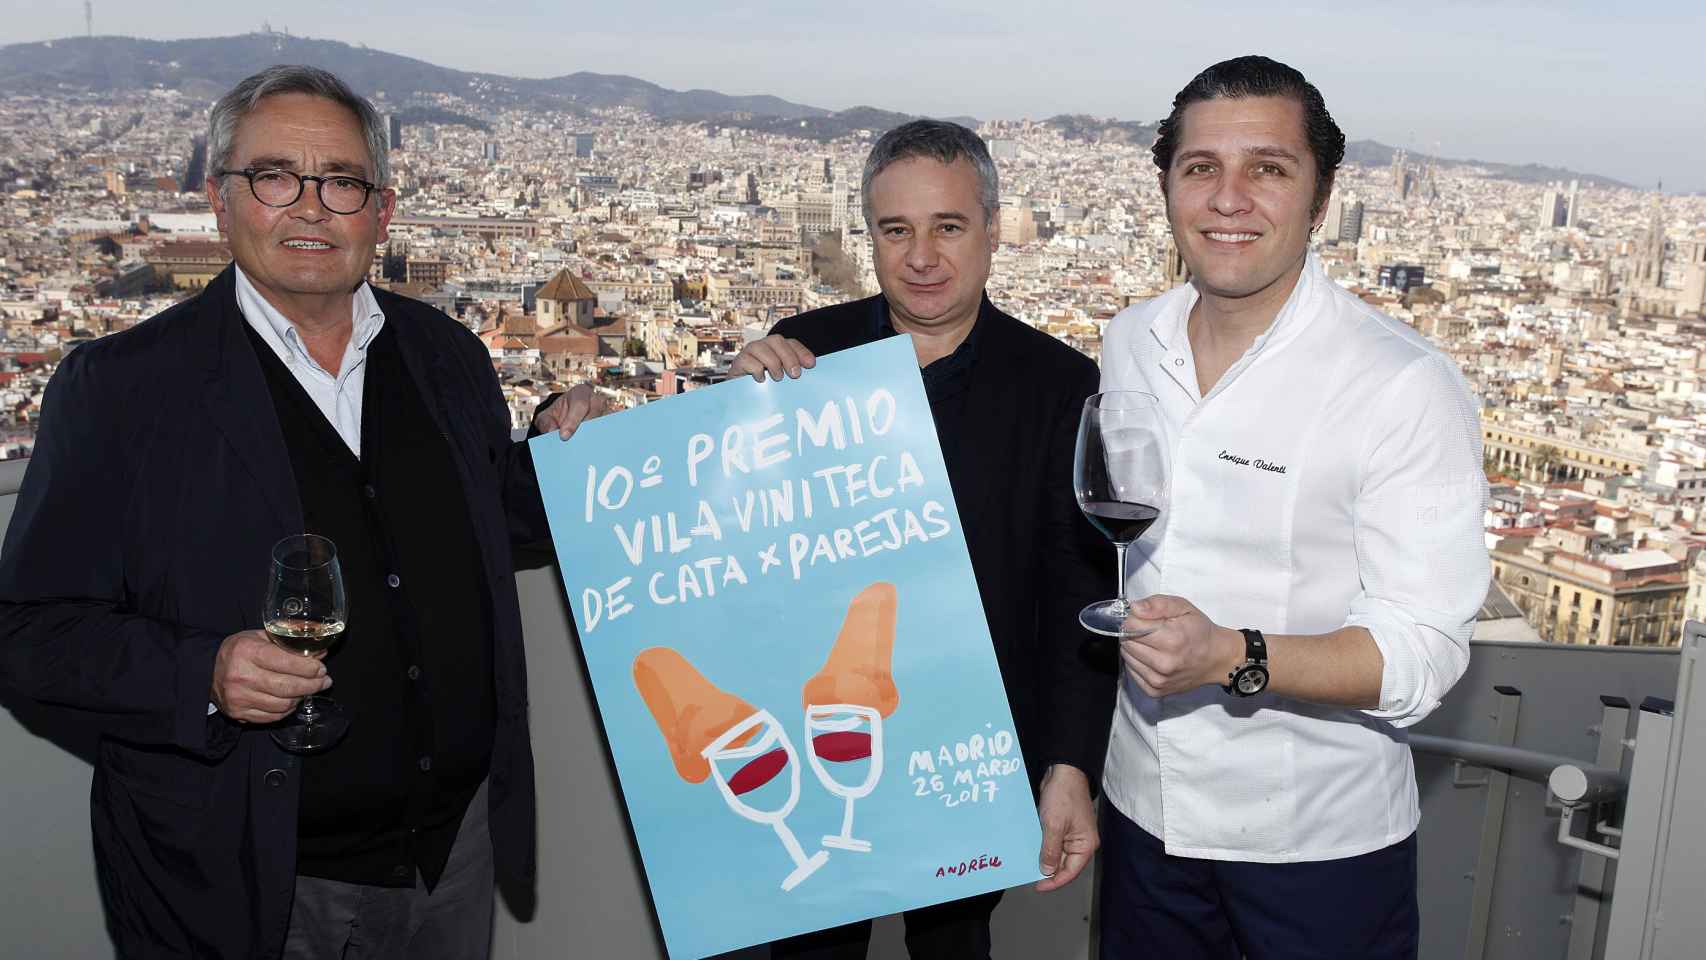 Siscu Martí (i) y Quim Vila (c), socios y propietarios de Vila Viniteca, junto al chef del restaurante Marea Alta de Barcelona, Enrique Valentí (d) / CG